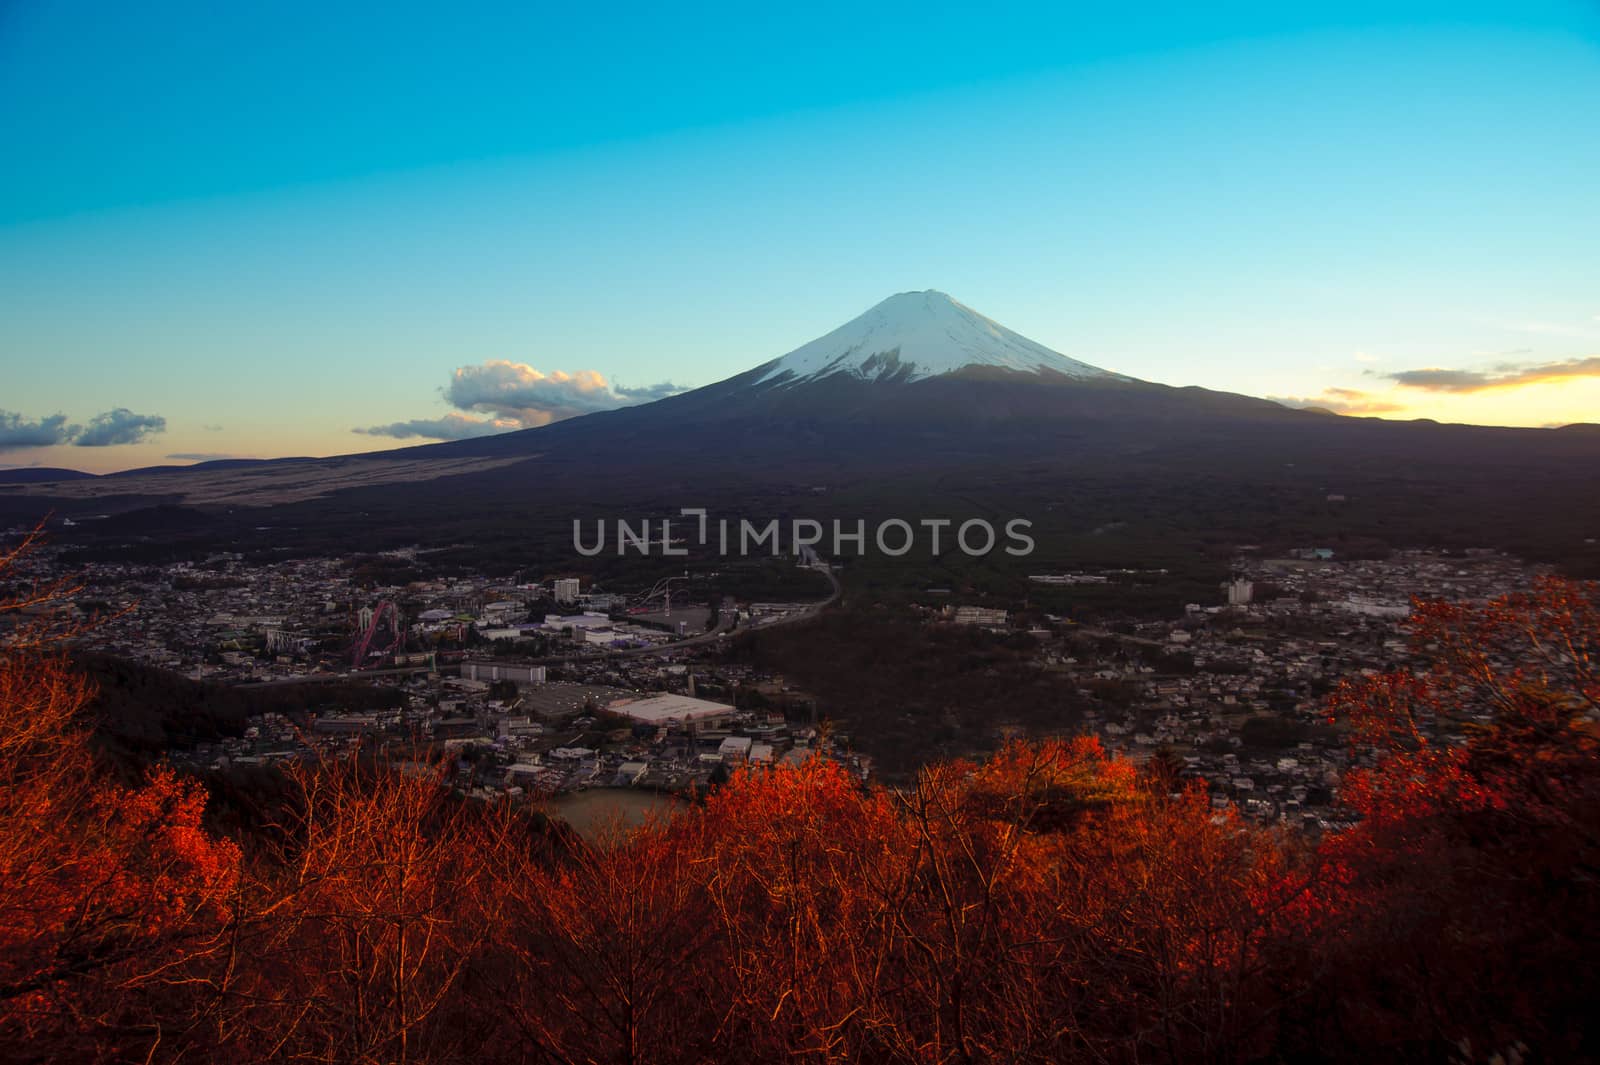 Top view of Fuji mountain